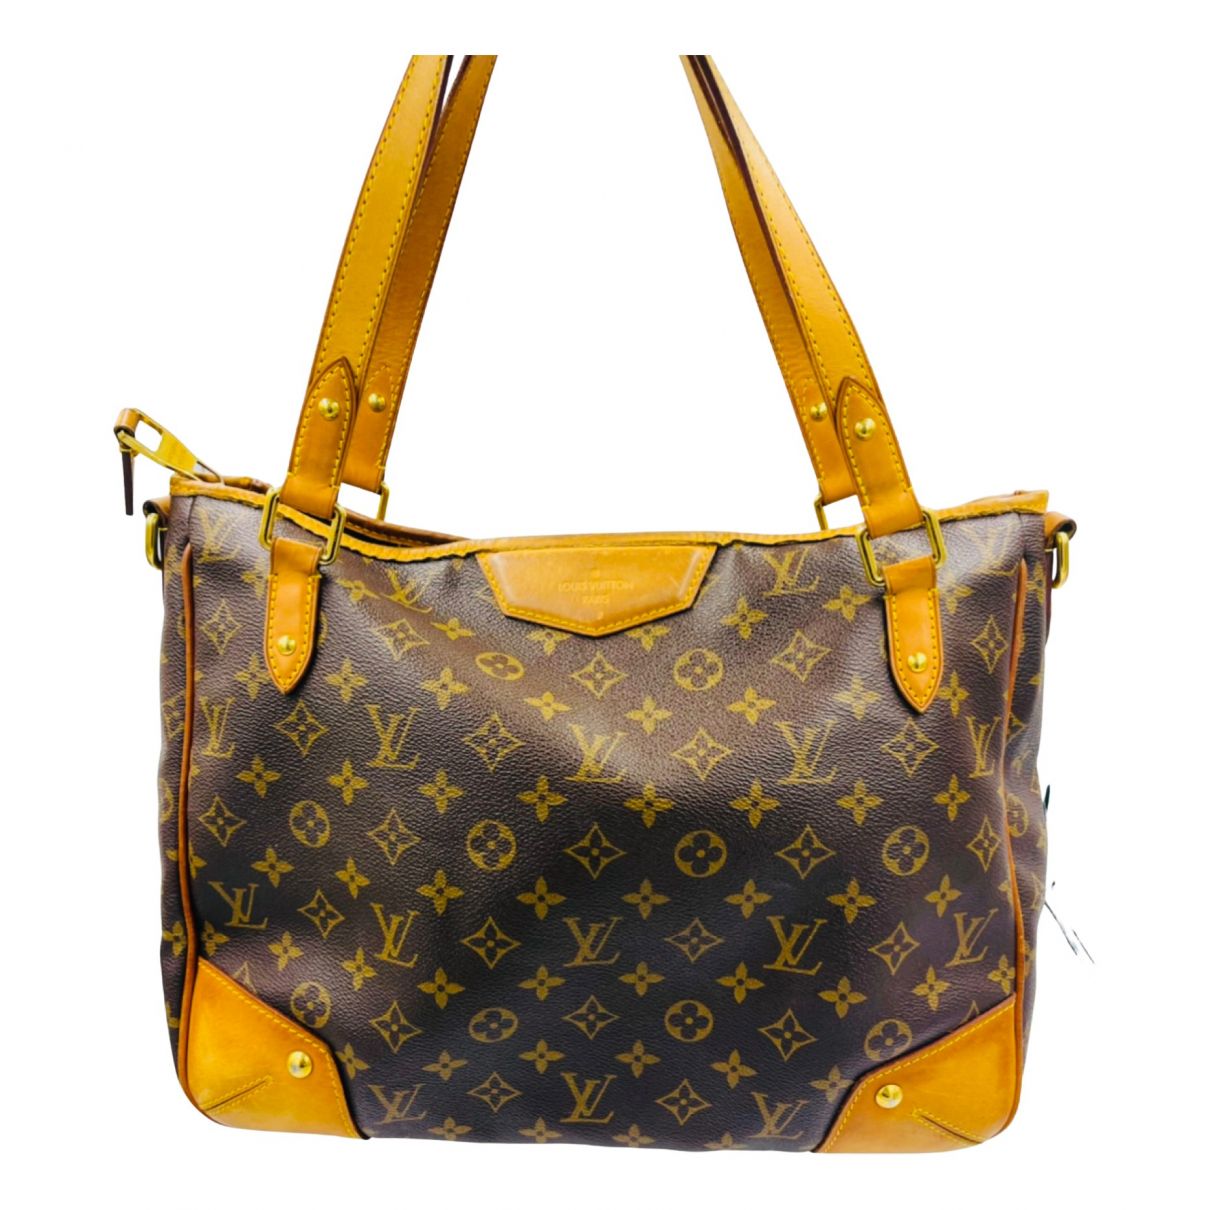 Estrela Louis Vuitton Handbags for Women - Vestiaire Collective